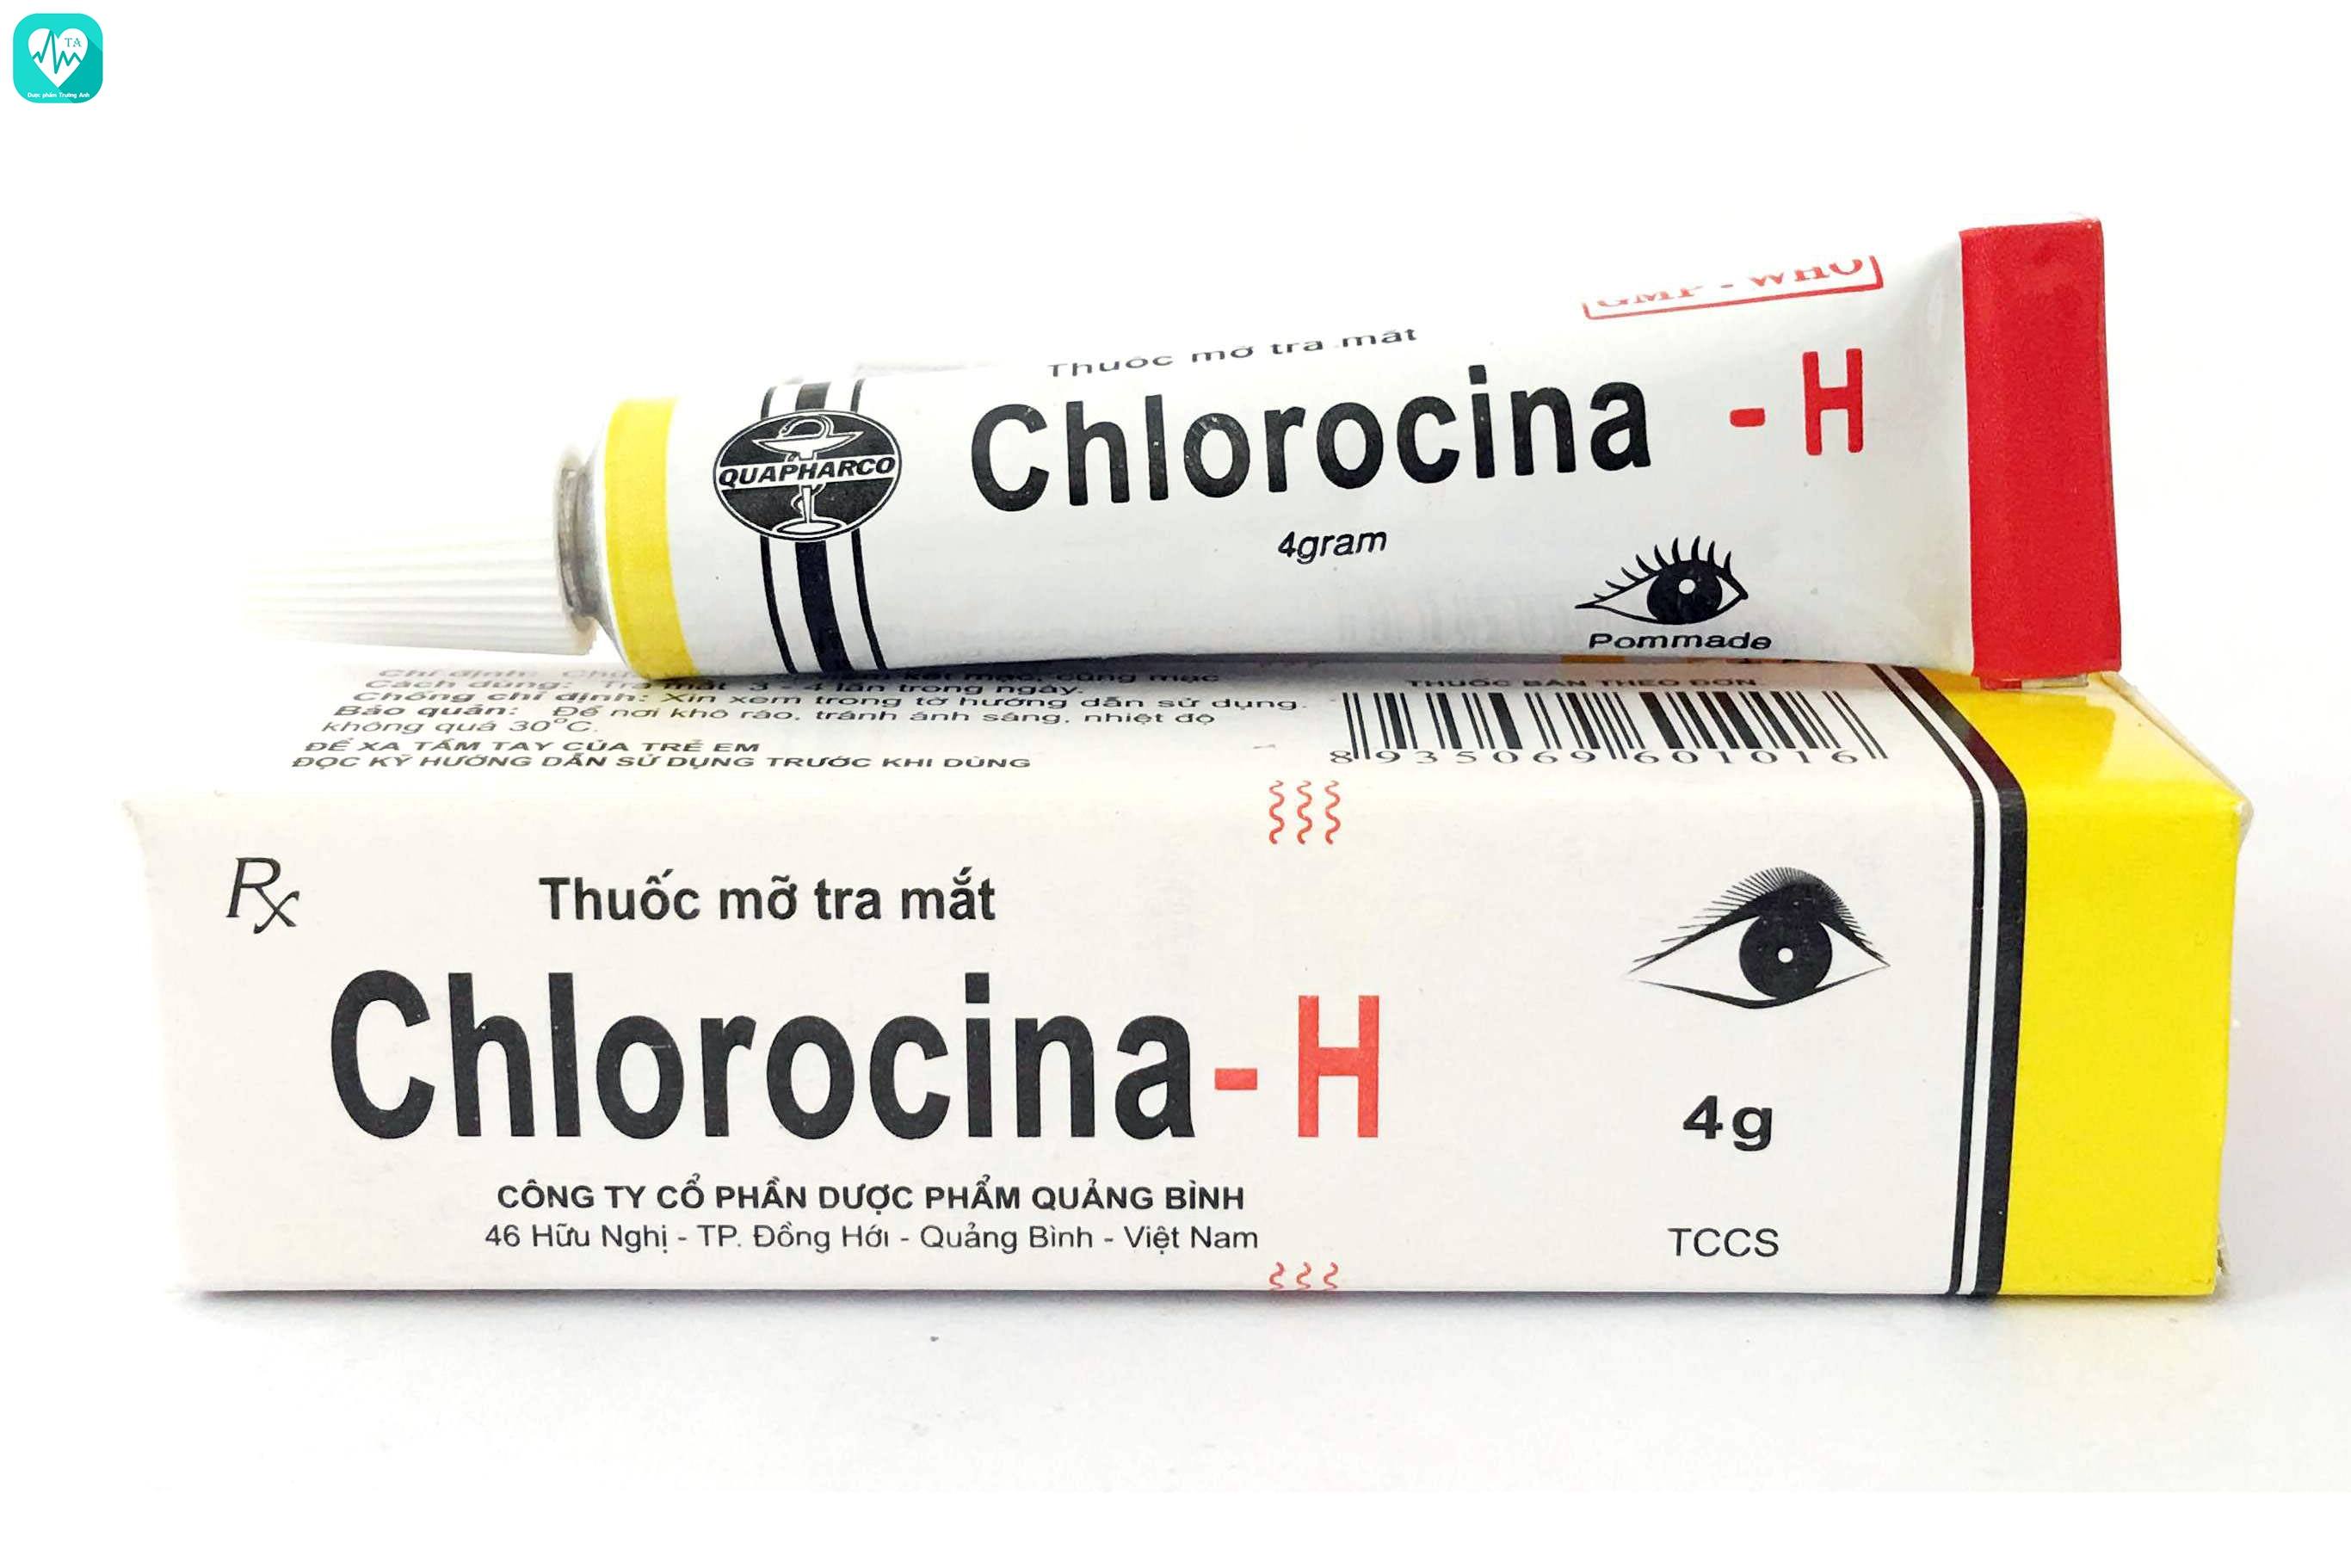 Chlorocina-H - Thuốc điều trị viêm kết mạc hiệu quả